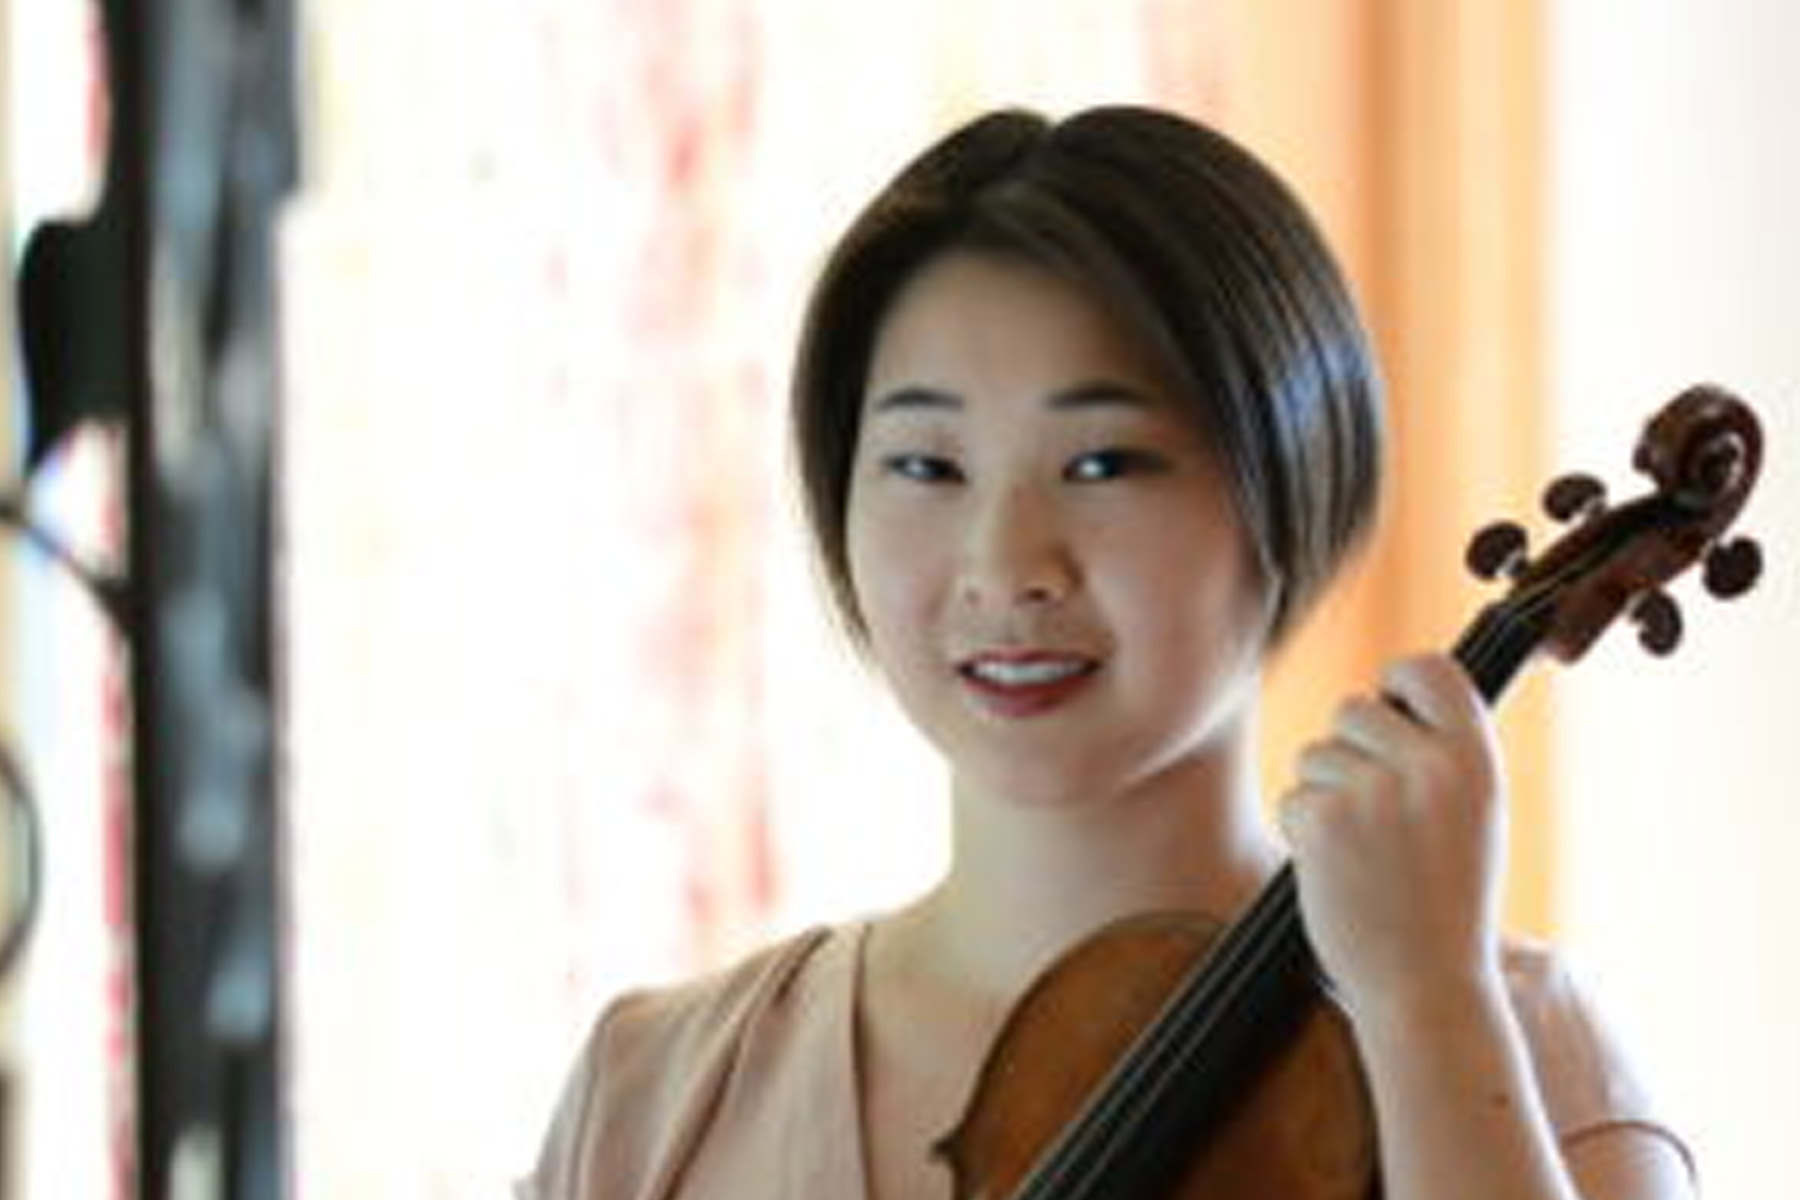 Headshot of Ashley Ng. She has short black hair and is holding a violin.